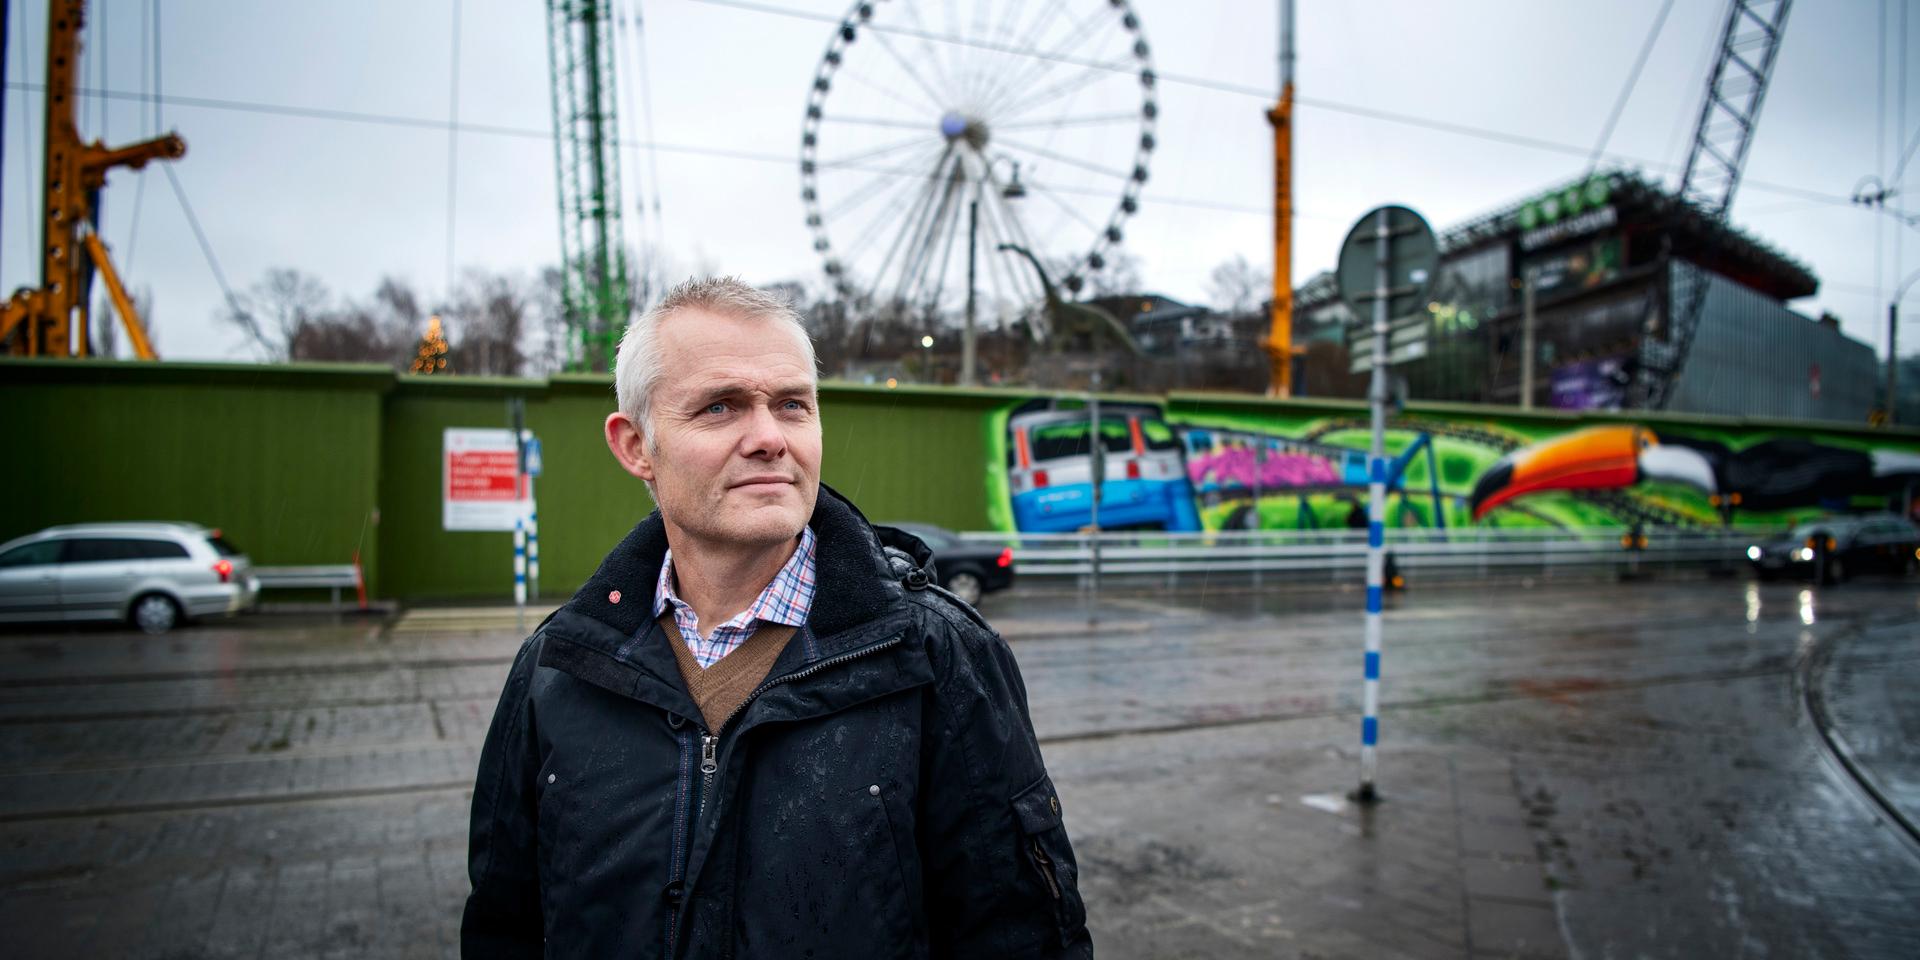 Socialdemokraternas gruppchef i Göteborg, Jonas Attenius (S), är mycket kritisk till Lisebergs beslut om att slopa köföreträde för personer med intellektuella funktionshinder.